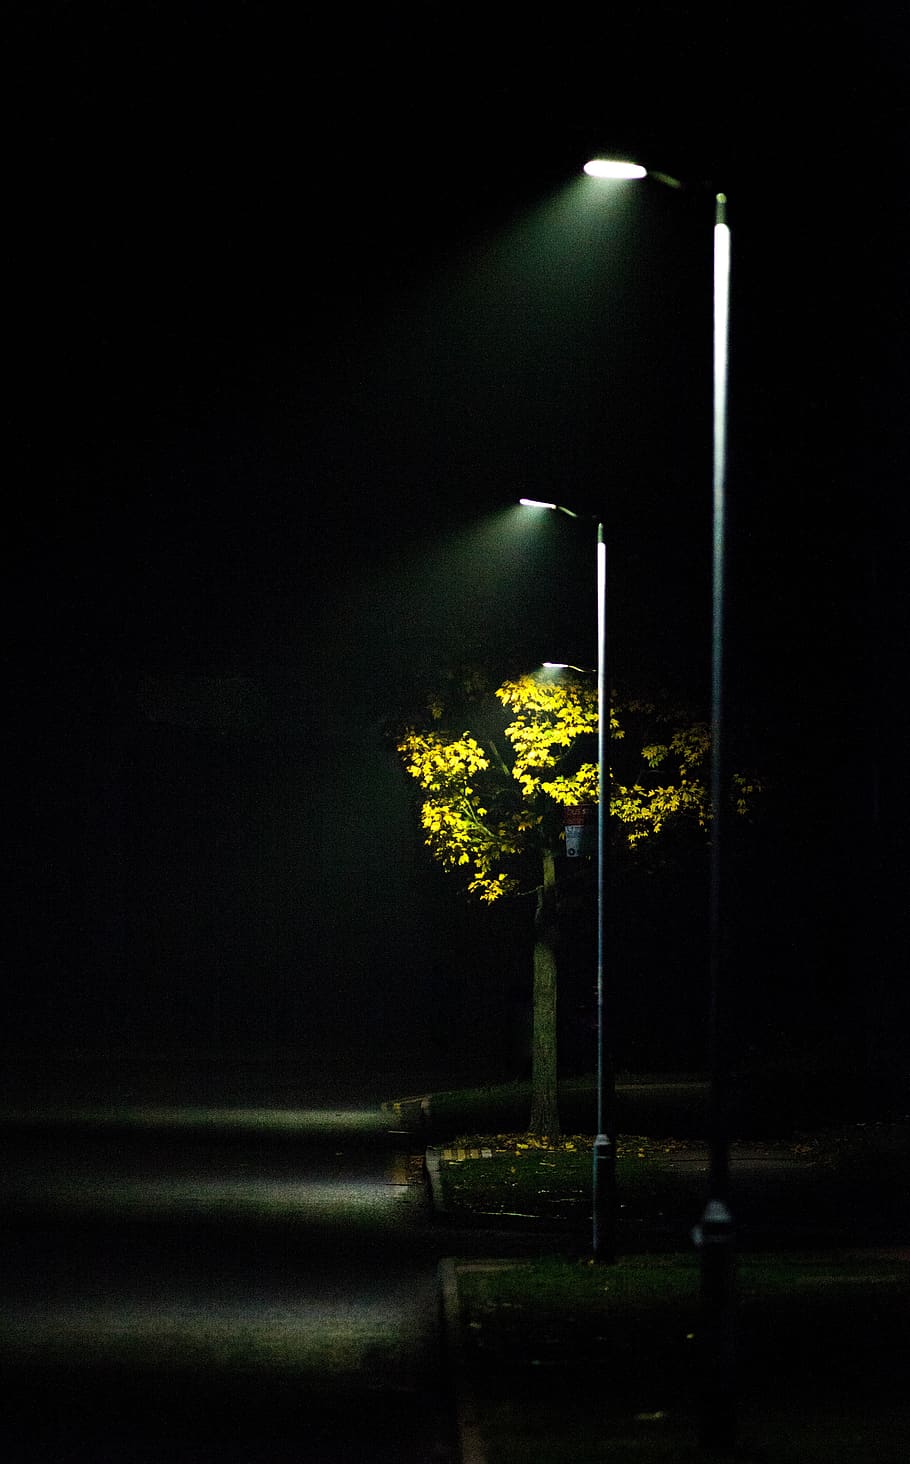 HD wallpaper: streetlight, mist, road light, scene, autumn, outdoor, night